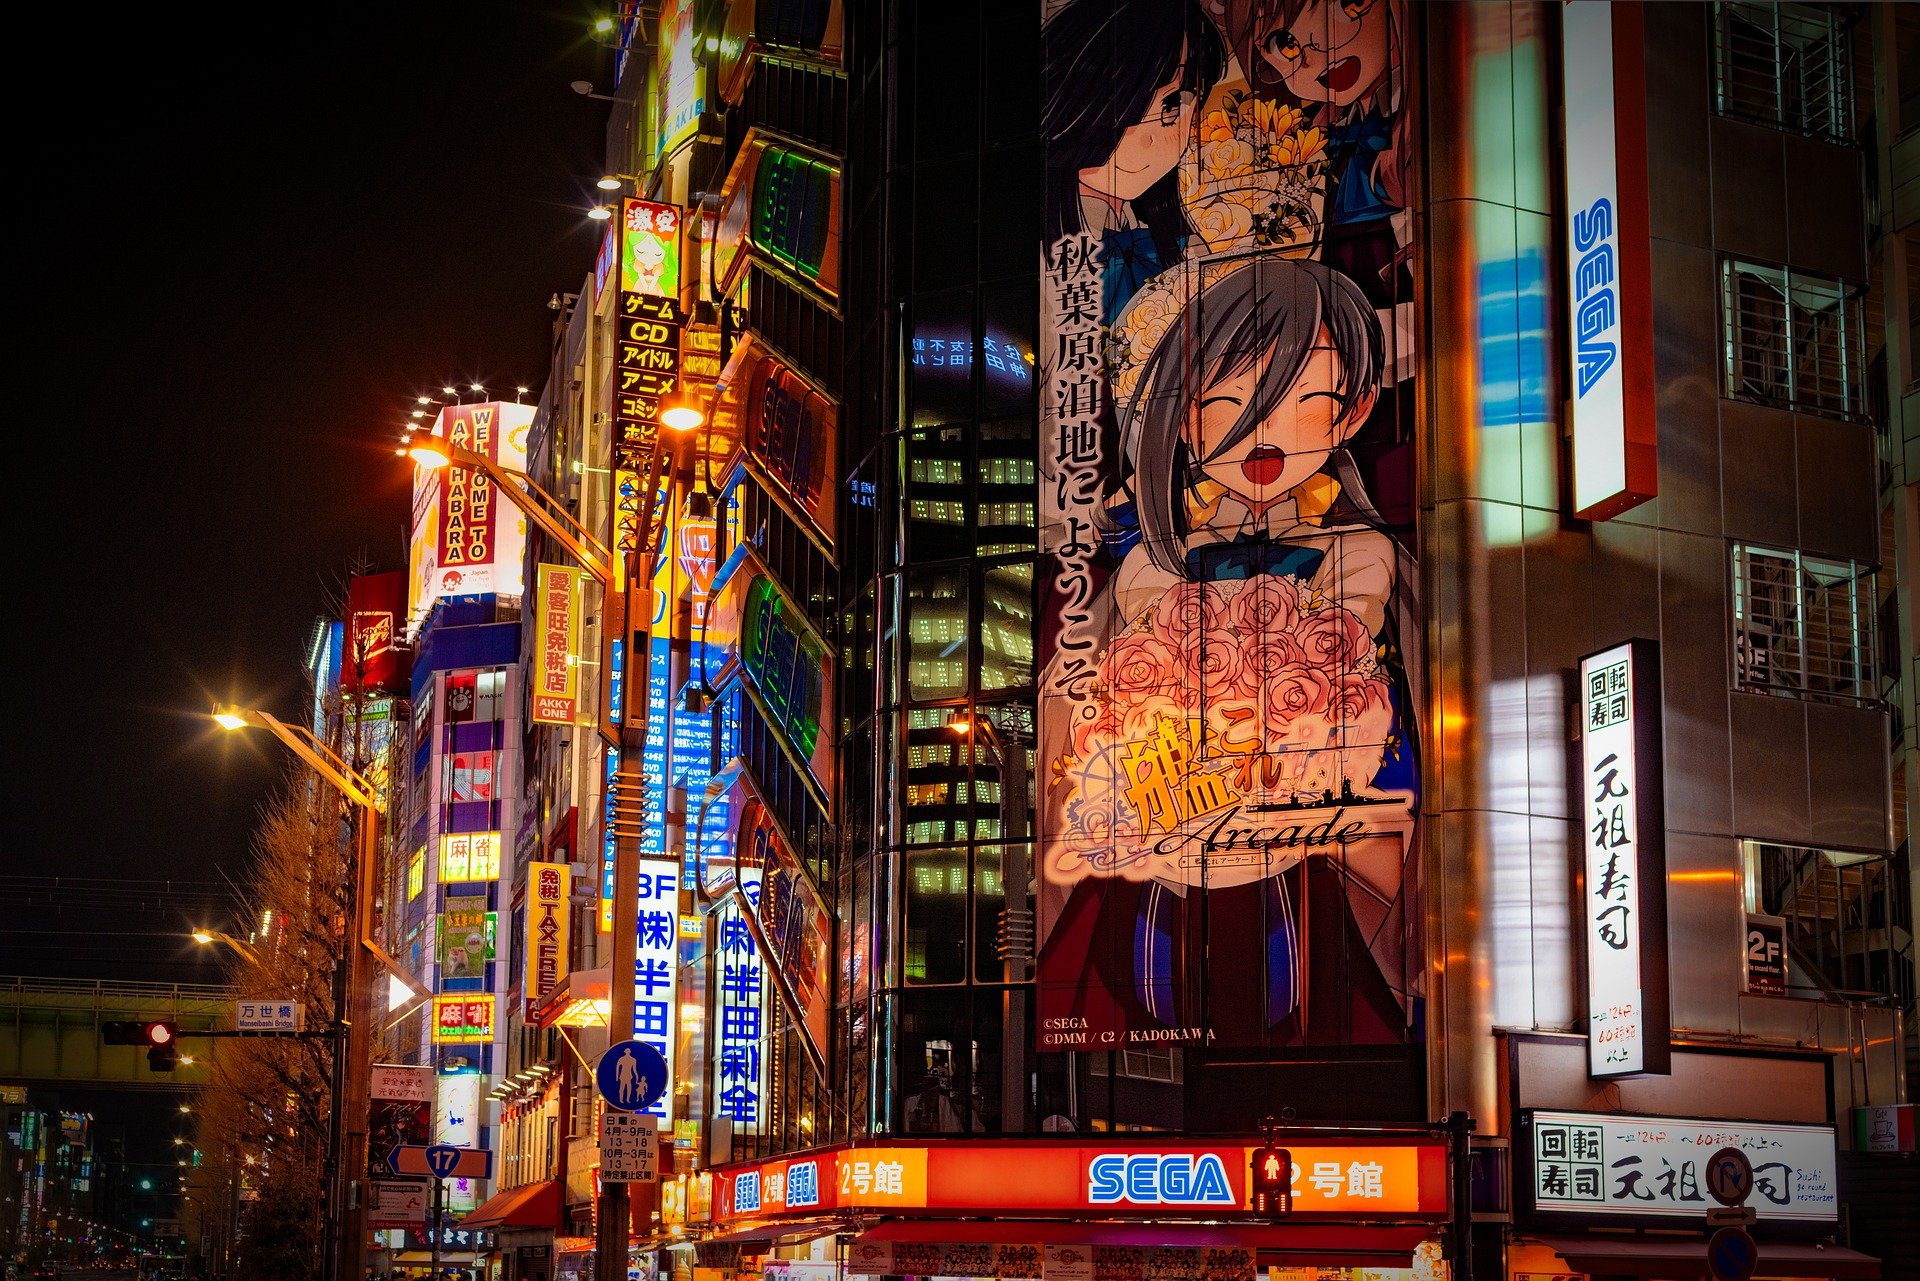 Carrefour japonais, illuminé par de grandes affiches de manga.